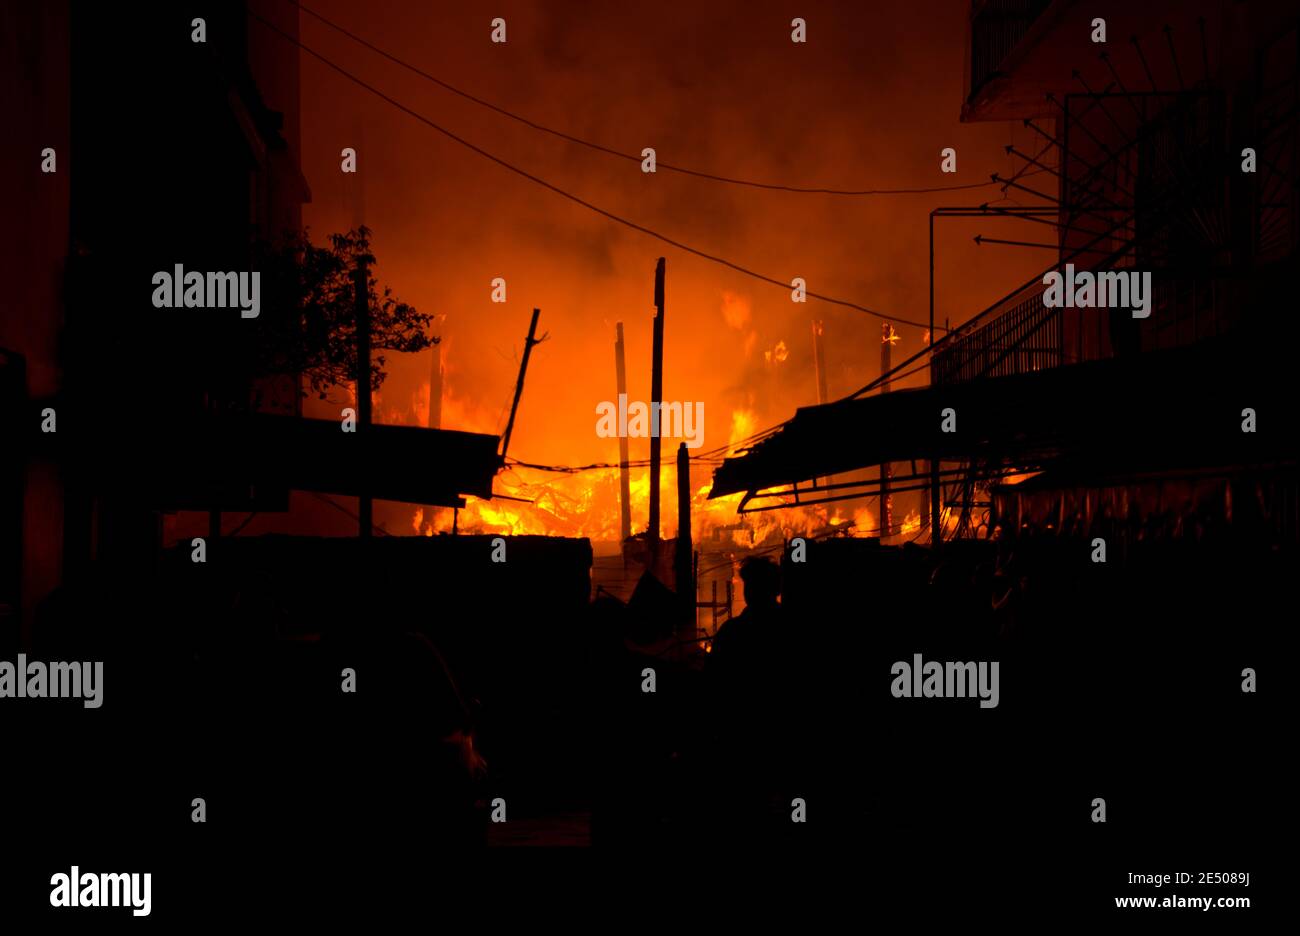 Häuser, Wohnung, Wohnung auf Feuer und Brennen in der Nacht auf dem Markt, Slum, lokalen Zentrum Gemeinschaft, Innenstadt in der Großstadt. Asiatisches Stadtbild. Stockfoto